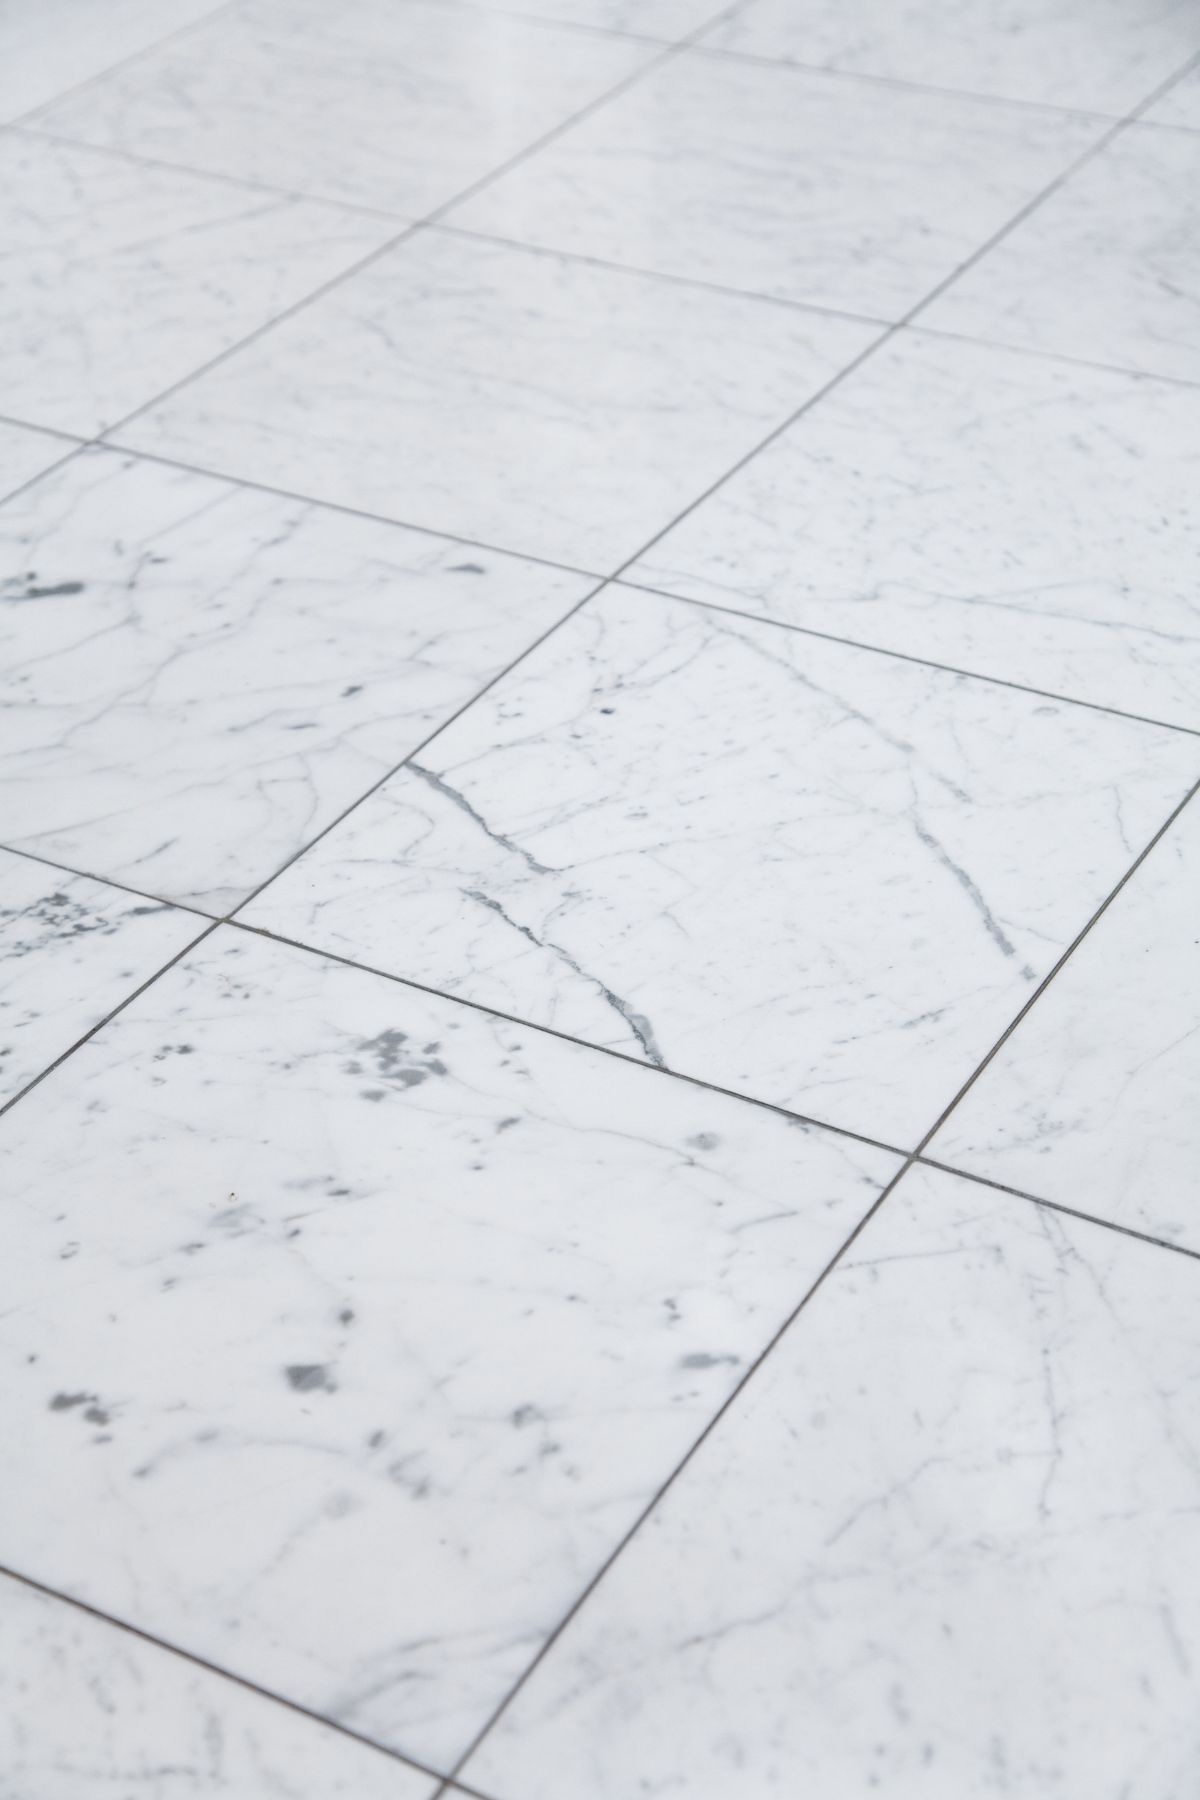 Lucidatura pavimenti in marmo Gallarate